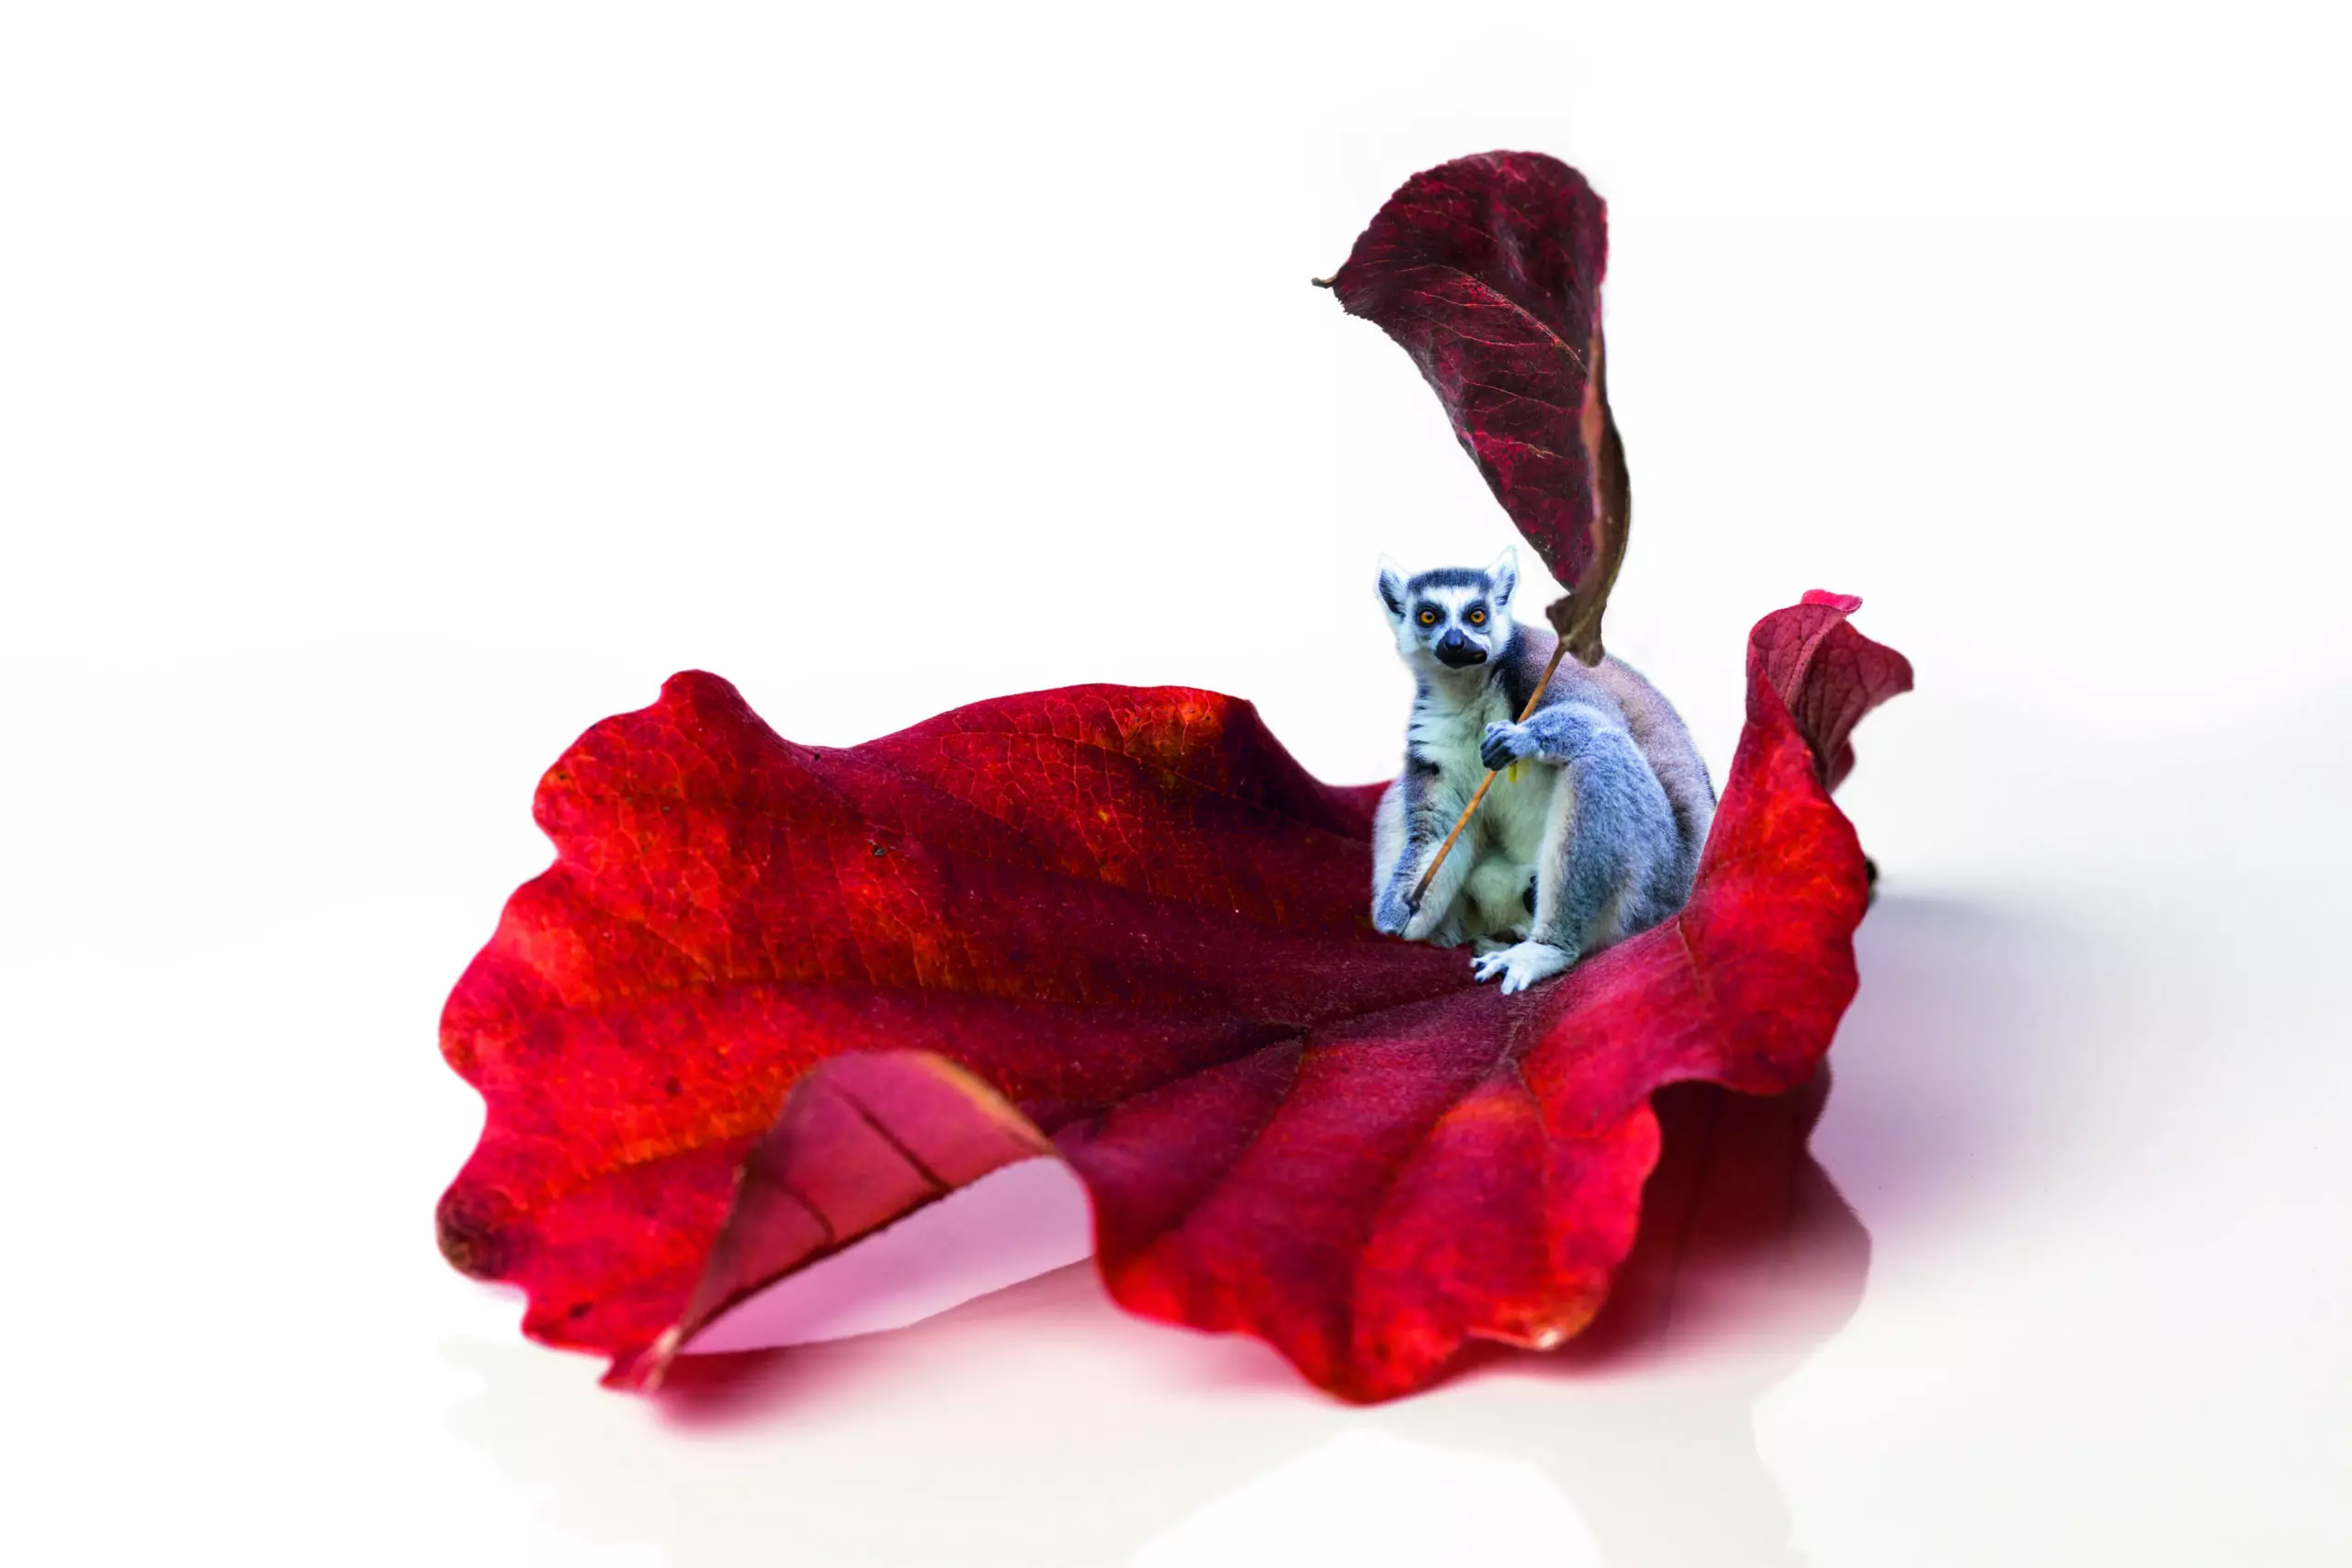 Wandbild (4394) red lemur präsentiert: Kreatives,Sonstiges Kreatives